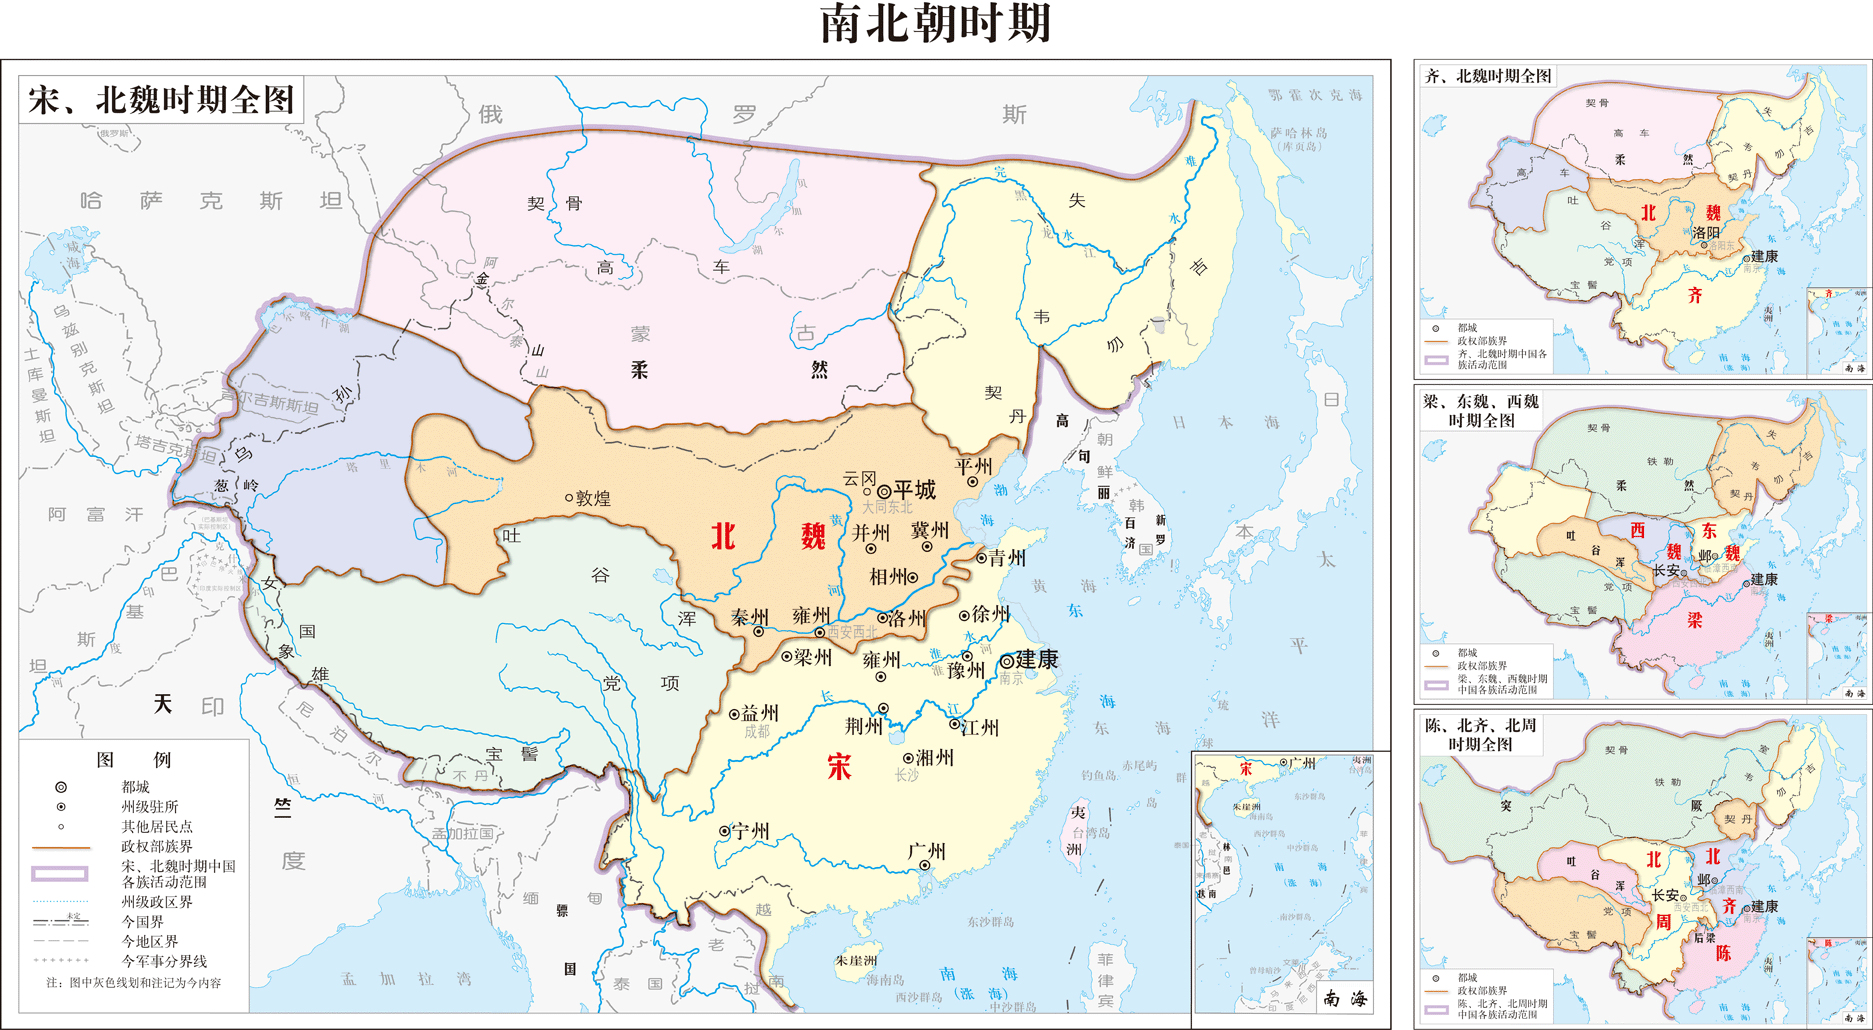 南北朝行政區劃